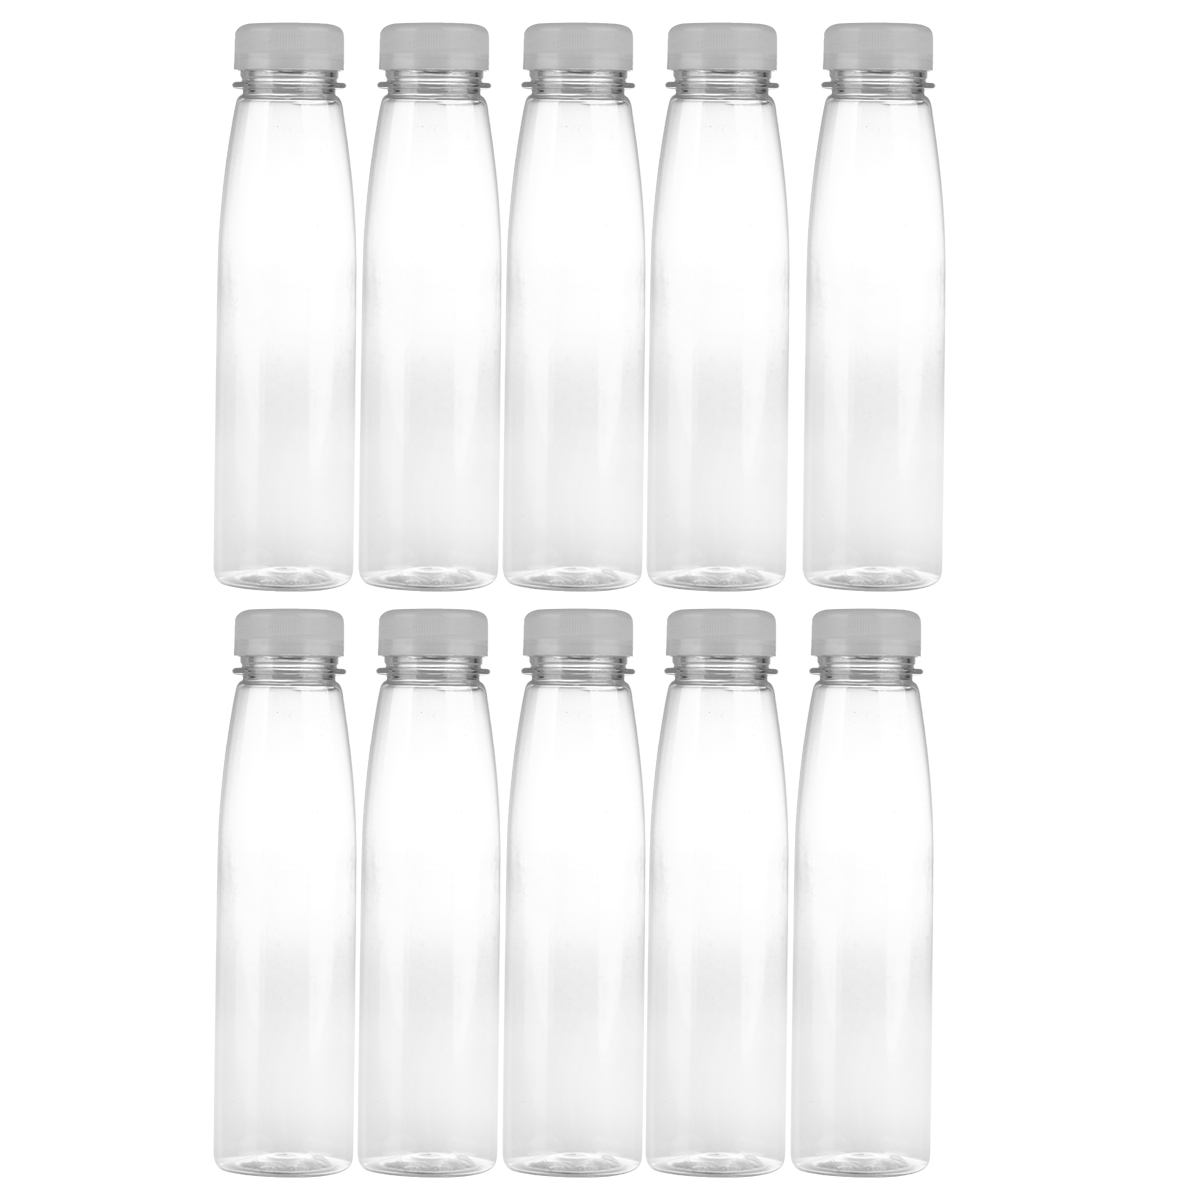 Hemoton 10PCS 330ml Empty Storage Containers Clear PET Bottles Plastic Beverage Drink Bottle Juice Bottle Jar with Lids (Random Color Caps) - image 1 of 6